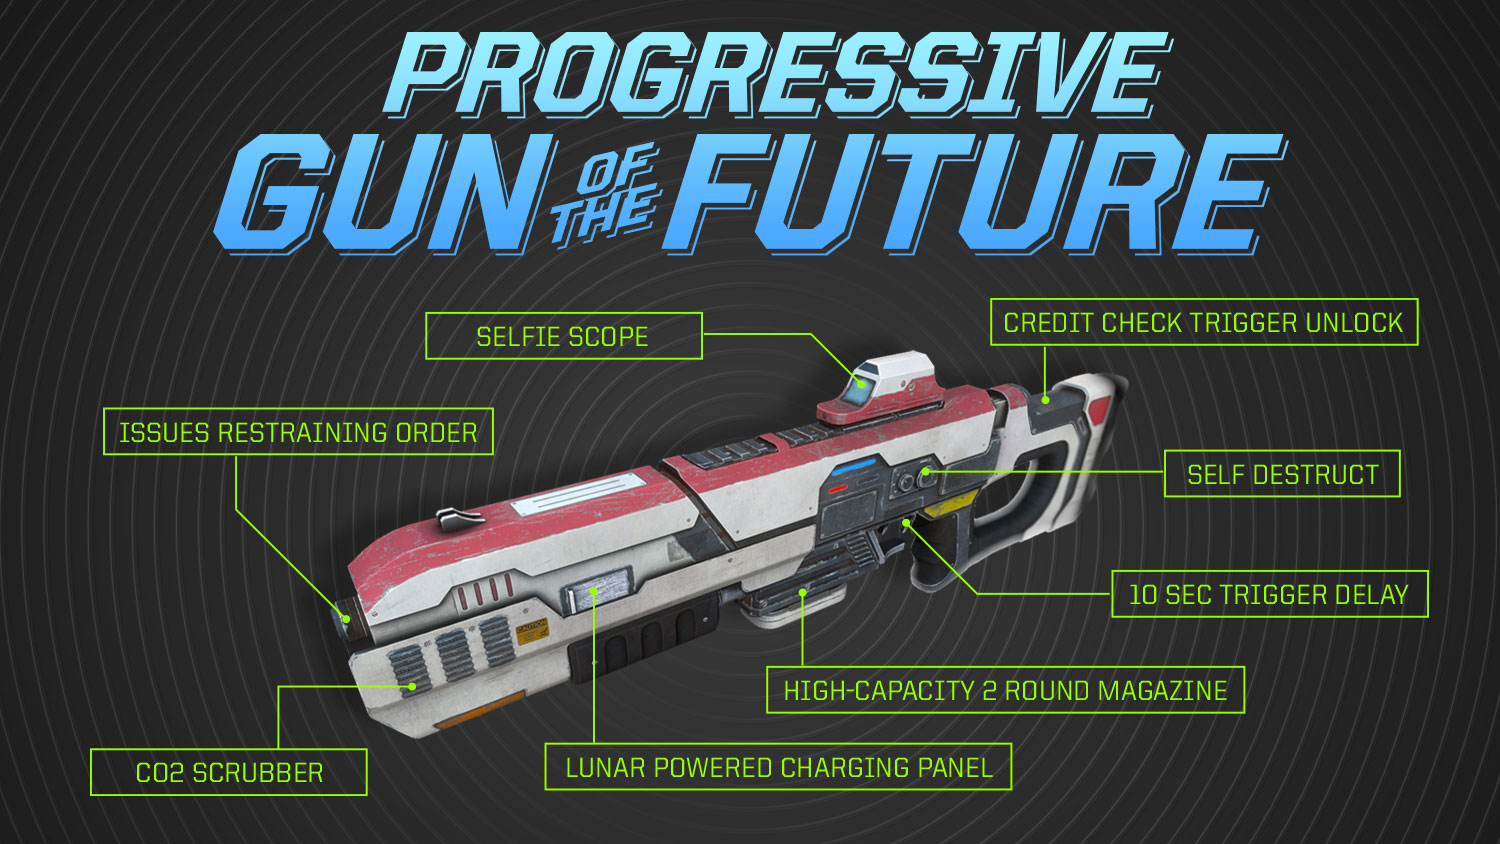 The Gun of the Future